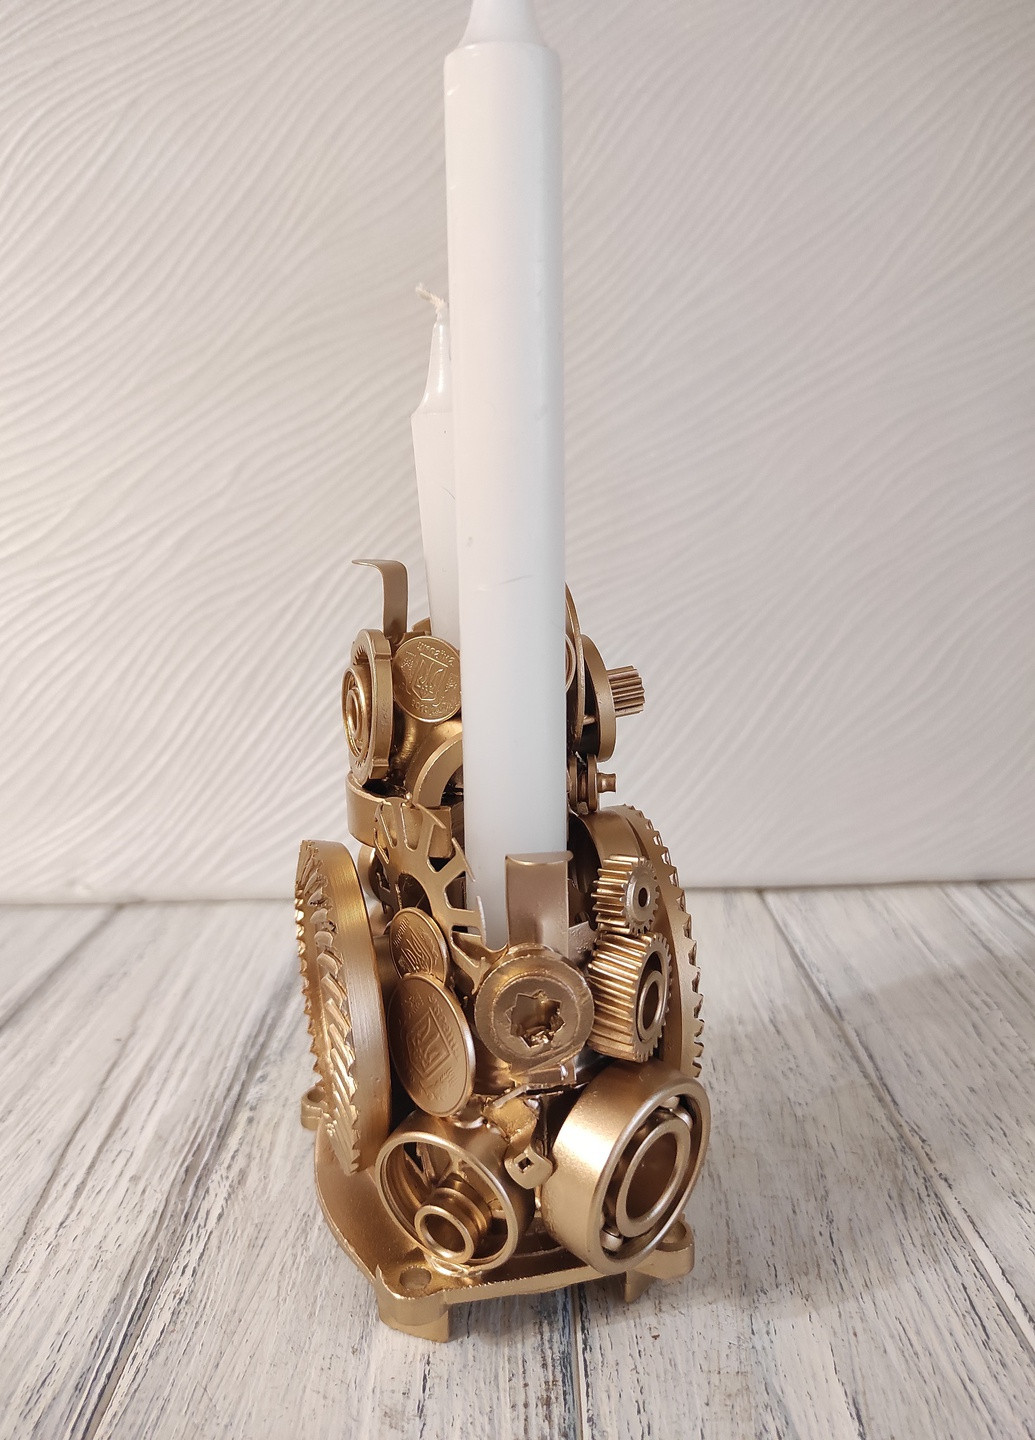 Сувенір підсвічник свічник стімпанк з металу з золотим напиленням ручна робота хендмейд подарунок SuvenirPodarokZP 5 (256615305)